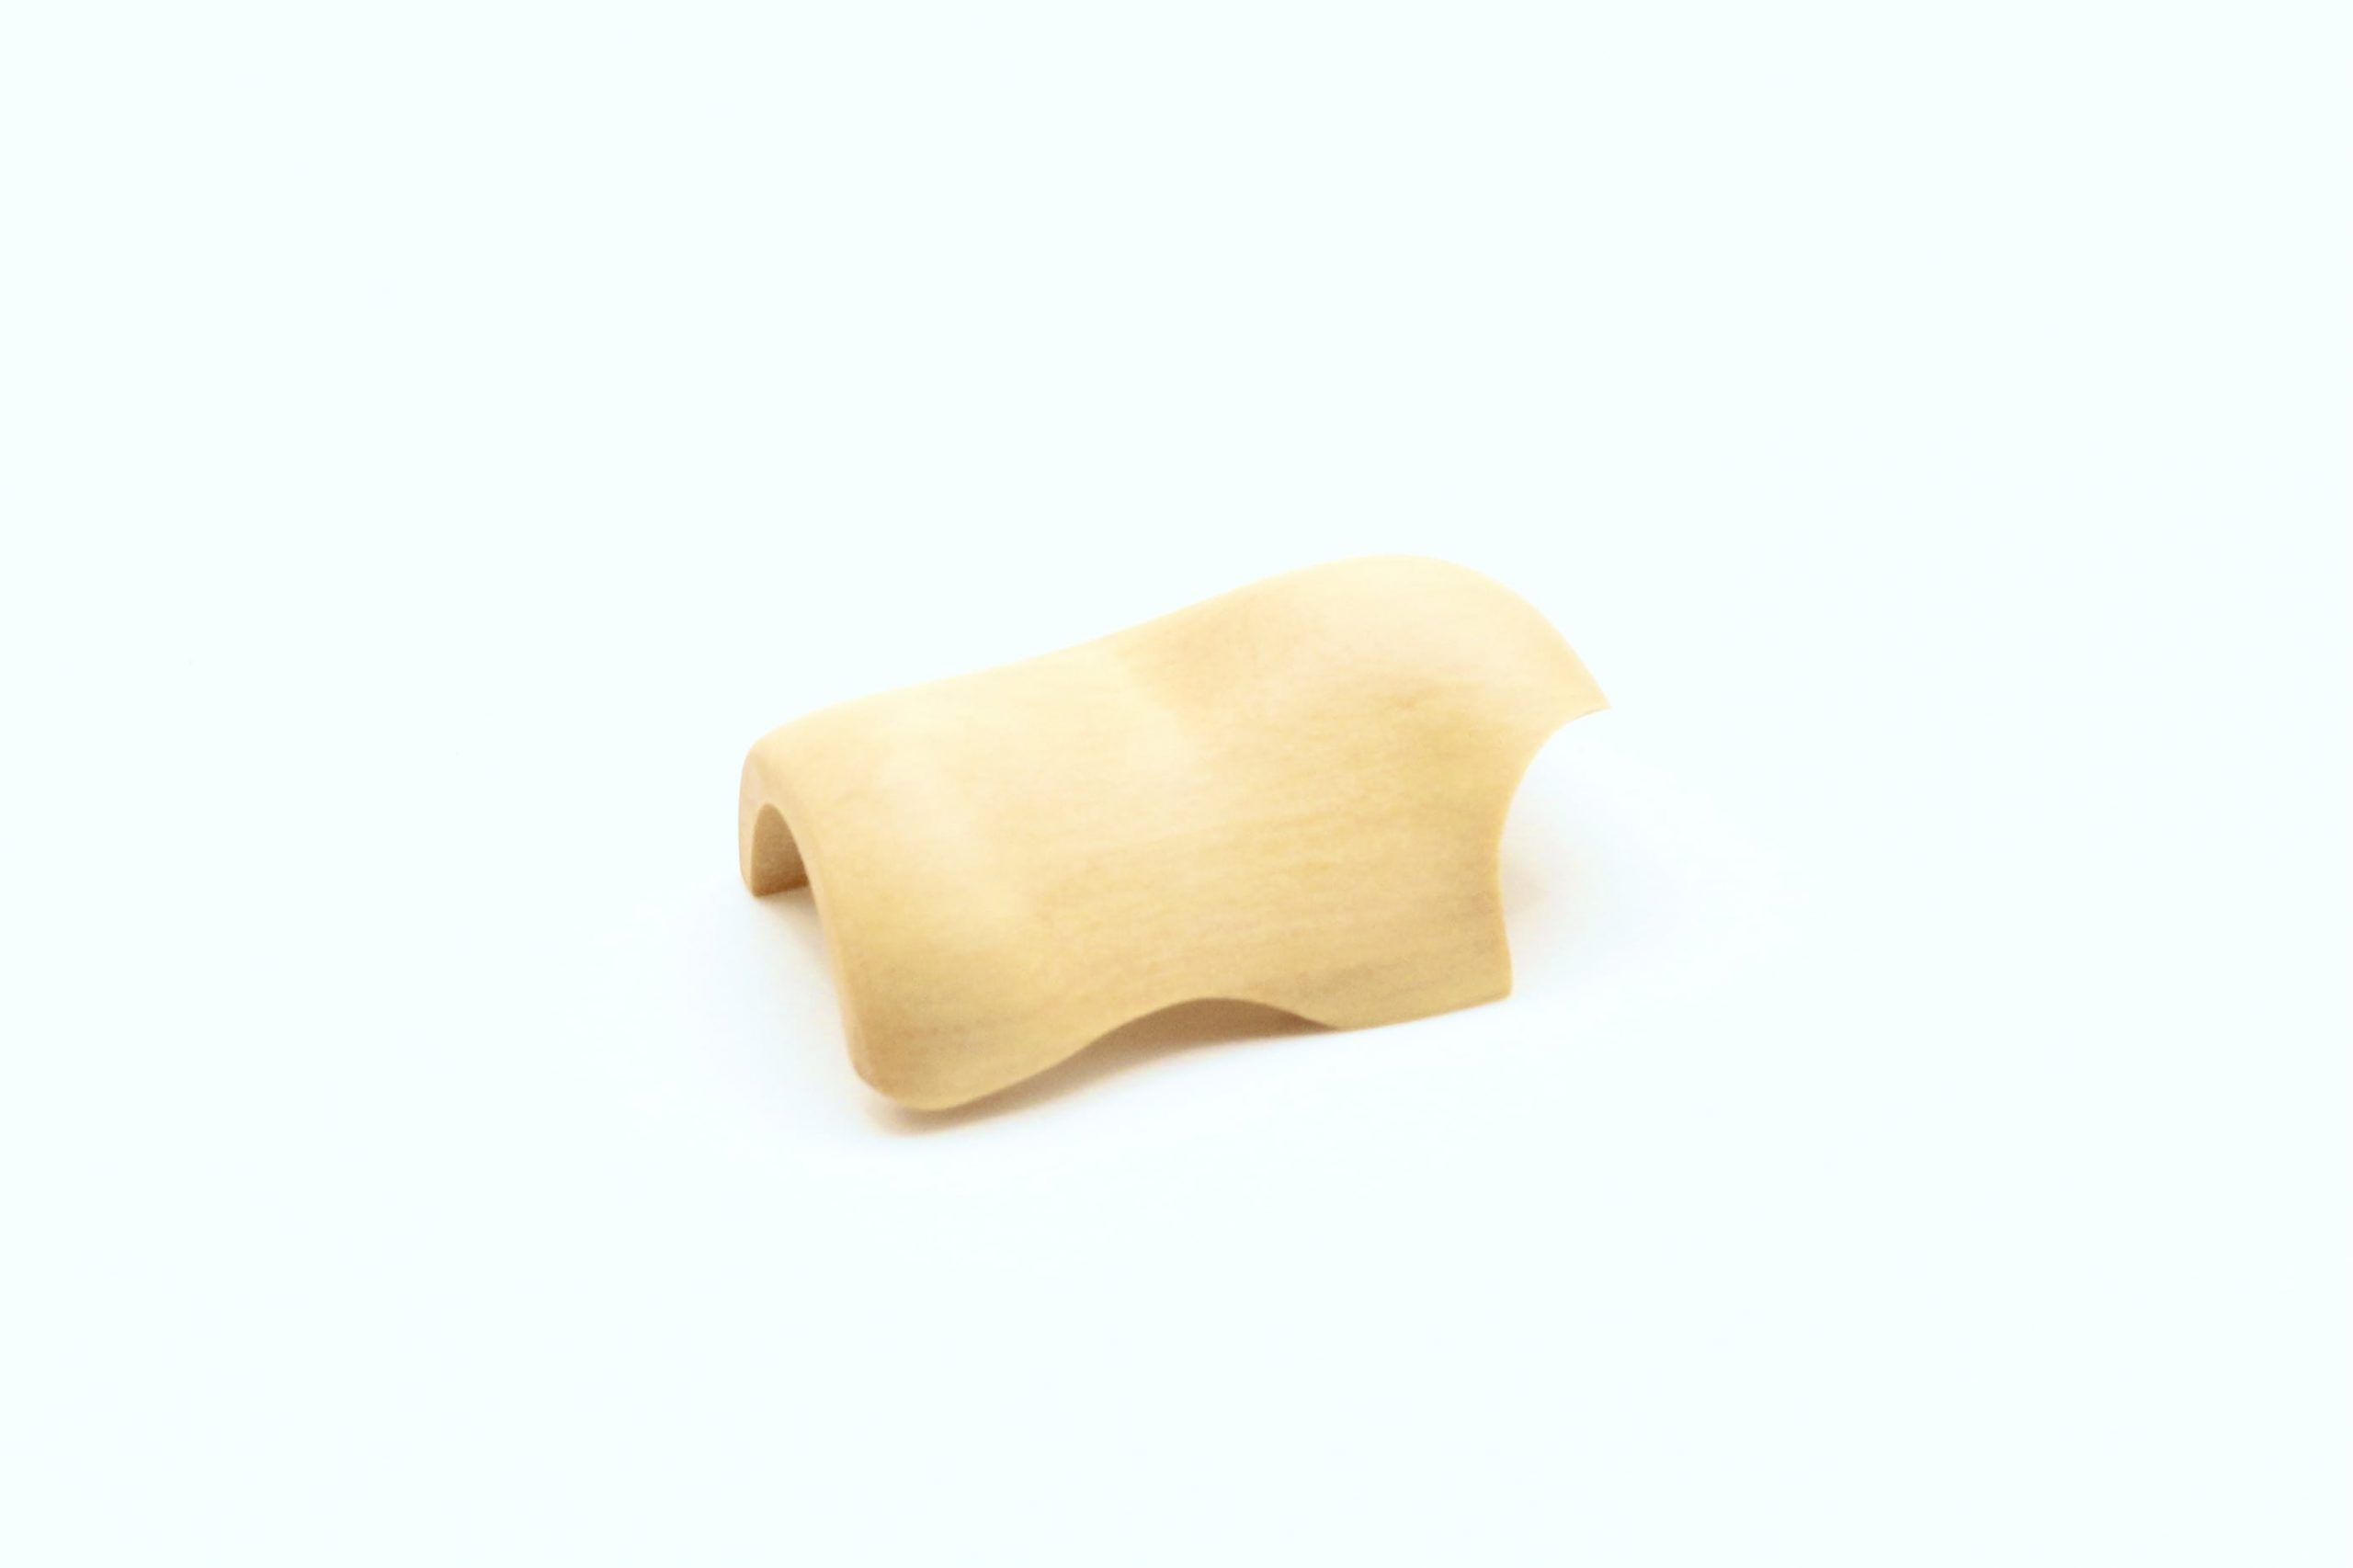 Woodify Wave Finger Stütze für Flöte - Buchsbaum